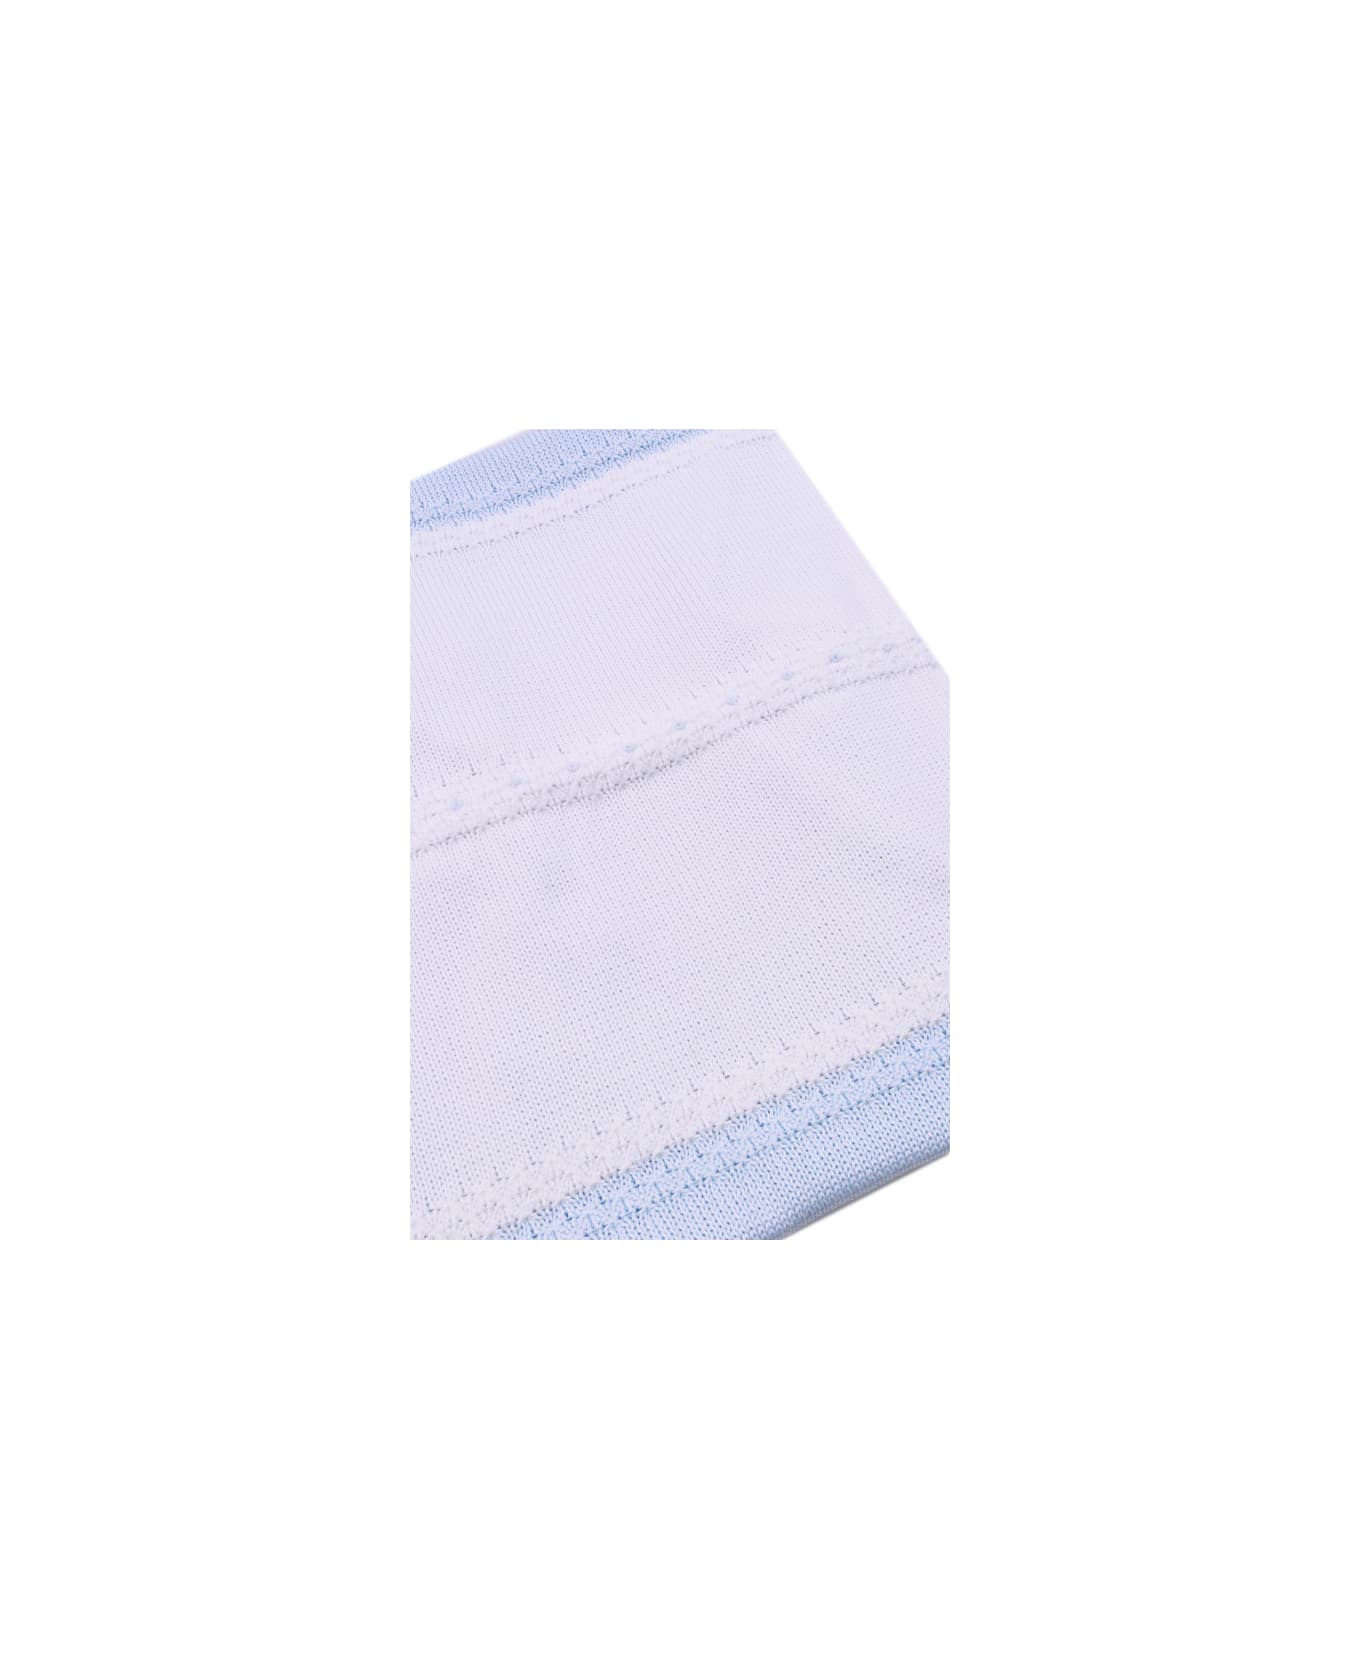 Piccola Giuggiola Cotton Blanket - Light blue